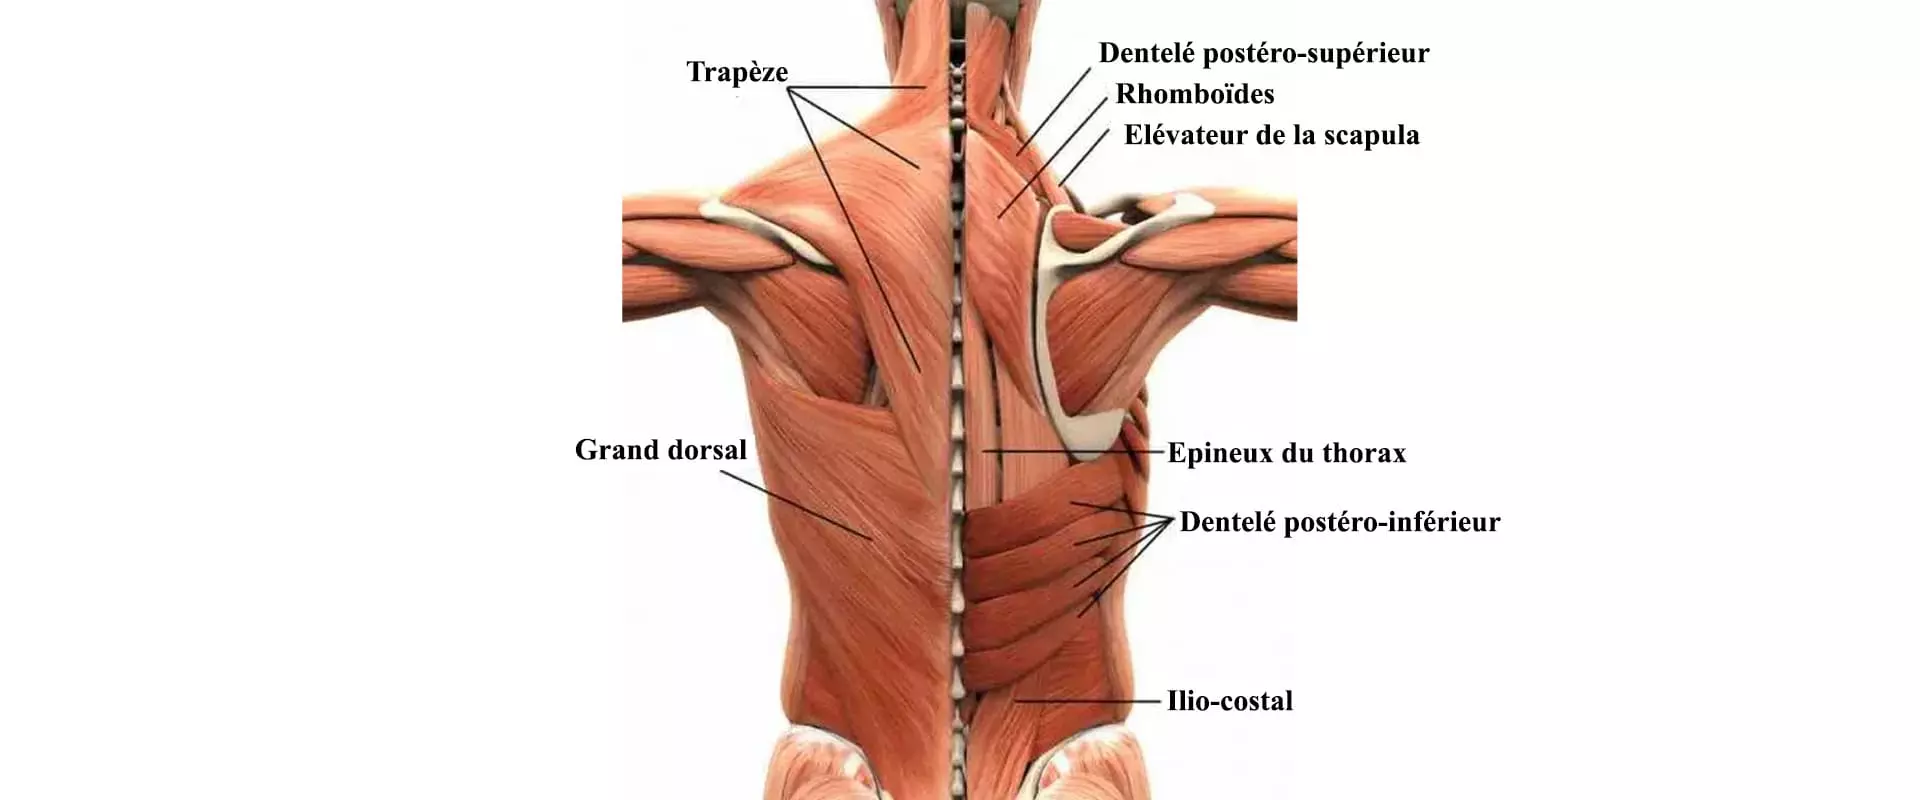 Anatomie de l'étiquette tableau masculin les muscles du dos, sur